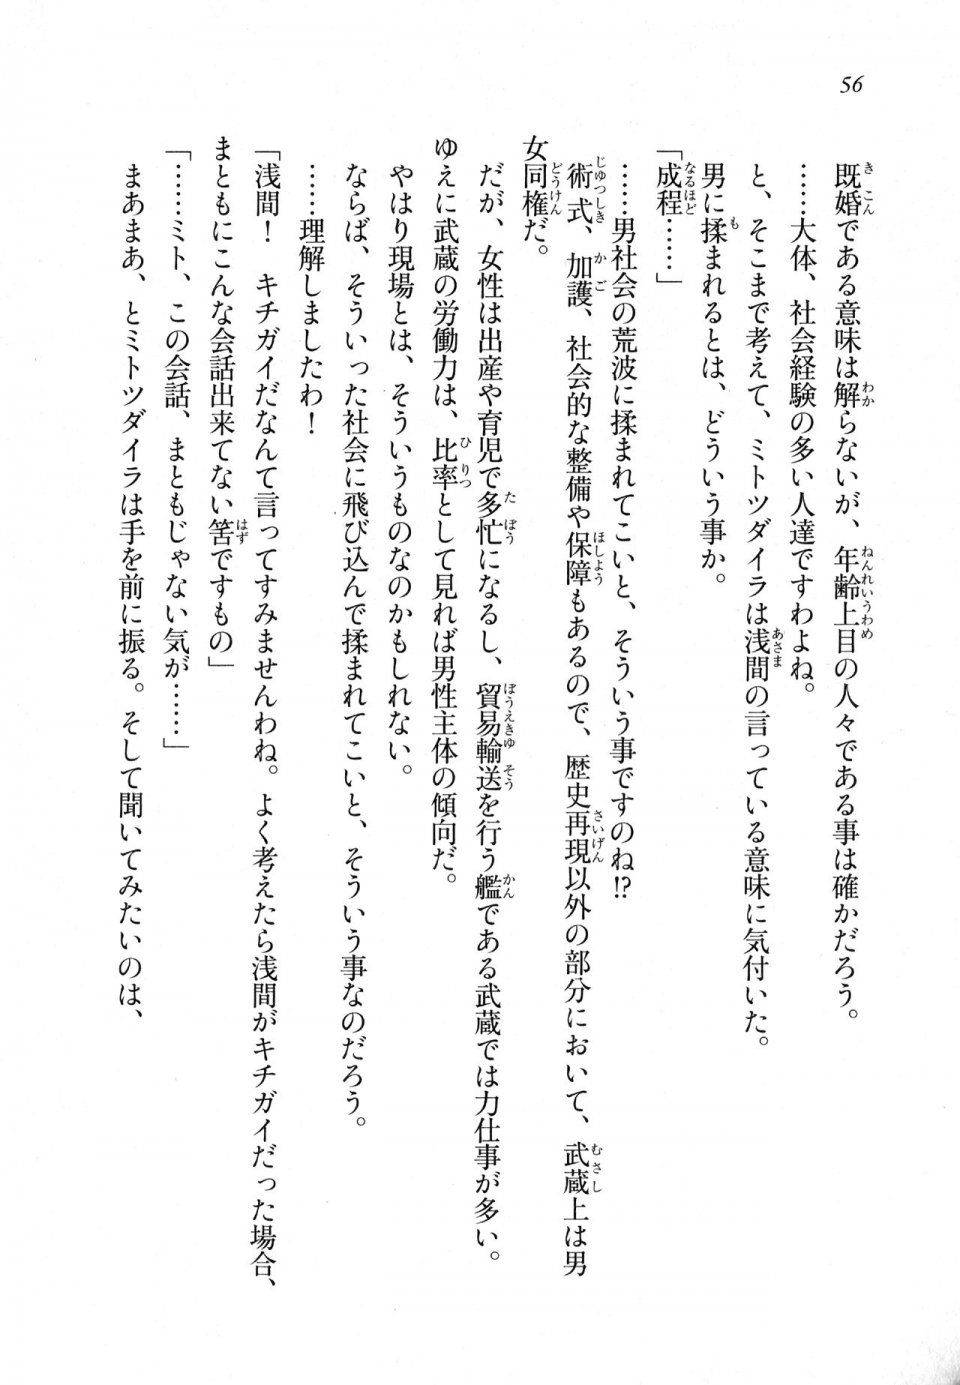 Kyoukai Senjou no Horizon LN Sidestory Vol 1 - Photo #54